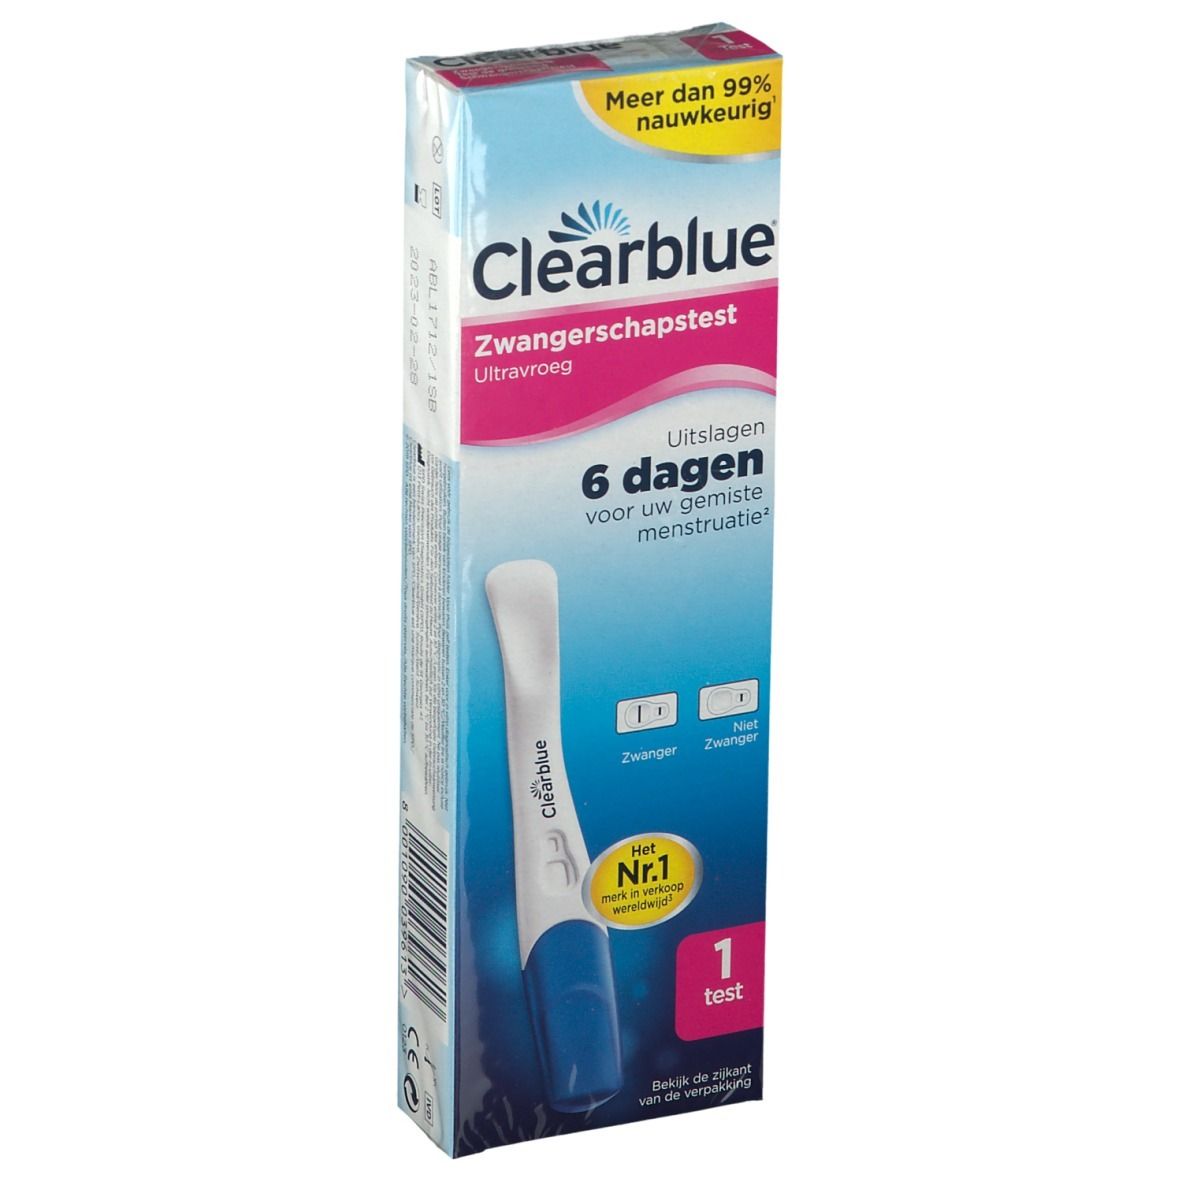 Clearblue® Test De Grossesse Early Détection Précoce